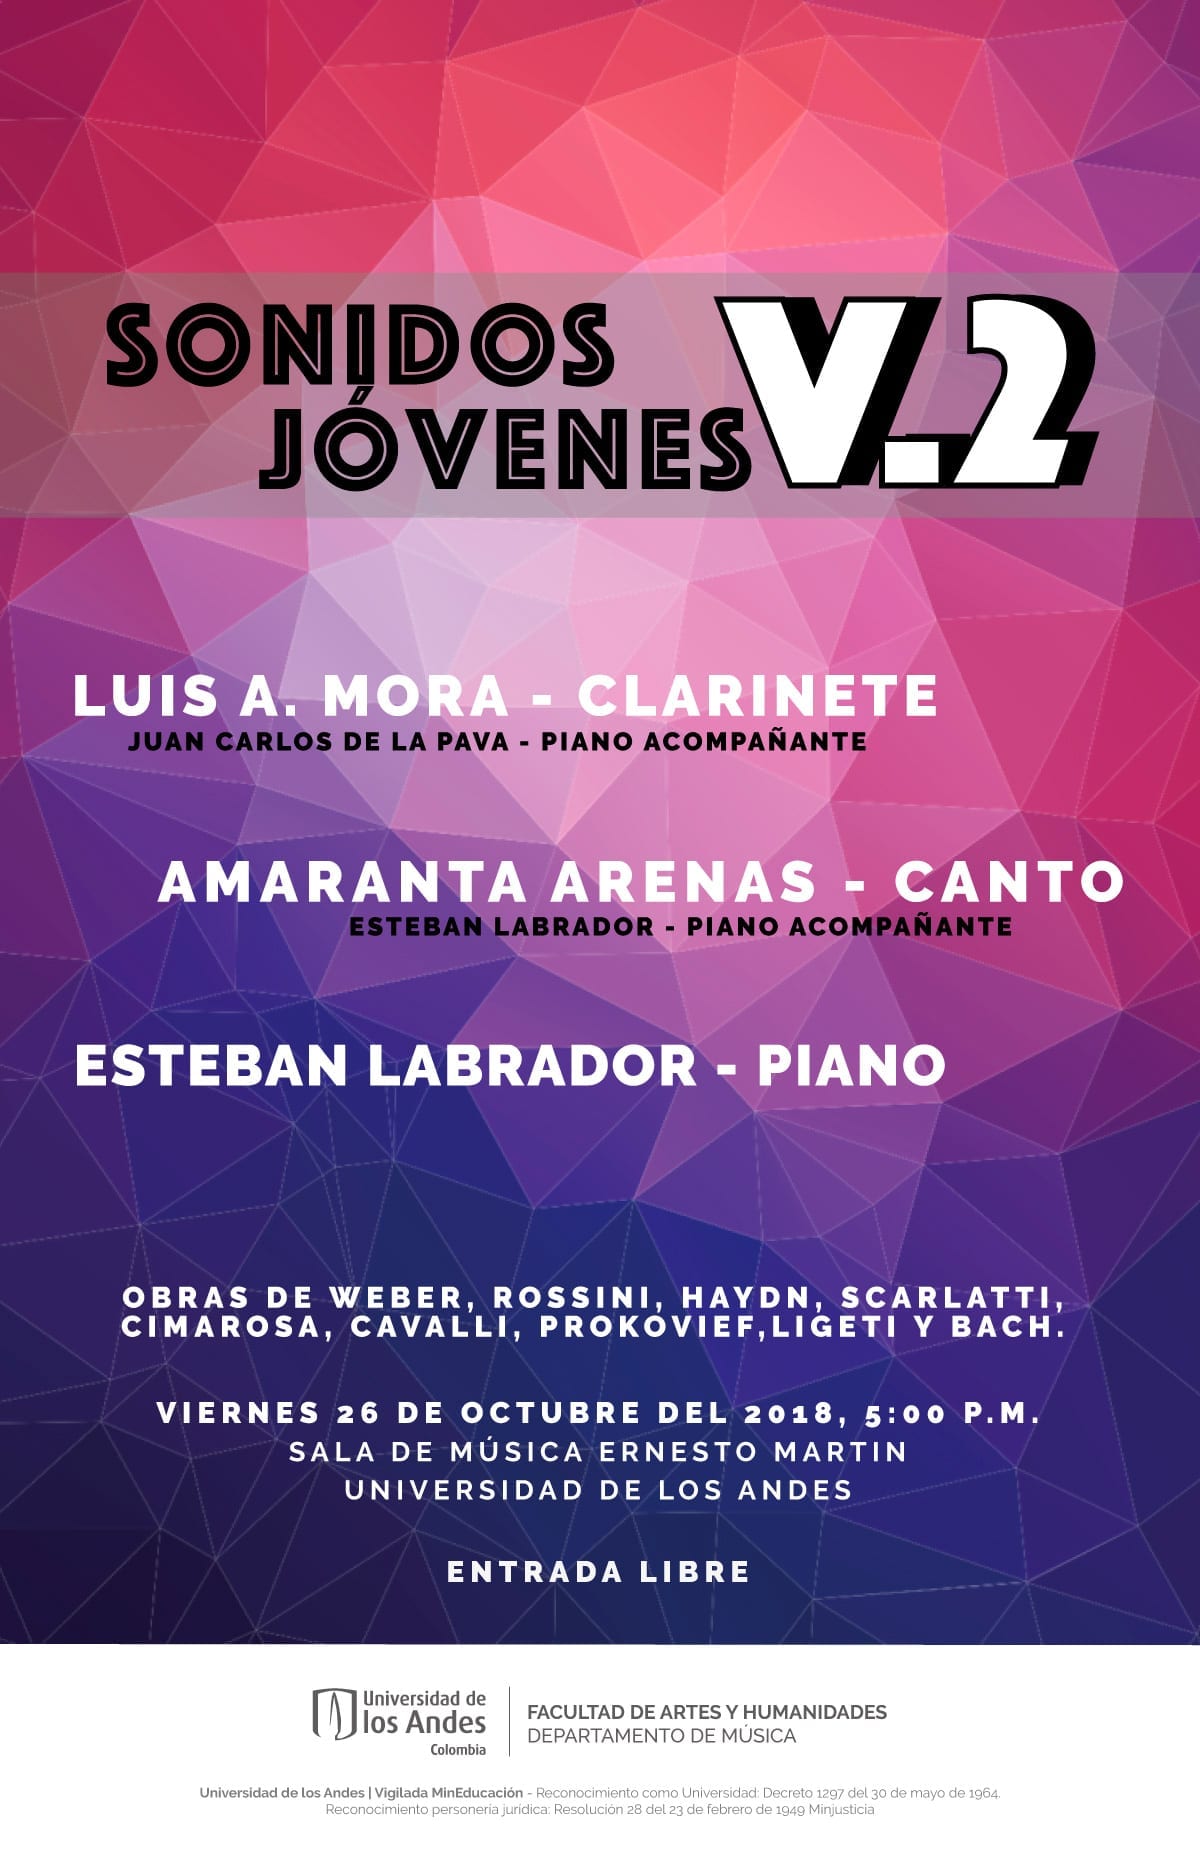 Luis Mora, clarinete, Amaranta Arenas, canto, y Esteban Labrador, piano se presentan en el primer concierto de la serie Sonidos Jóvenes.